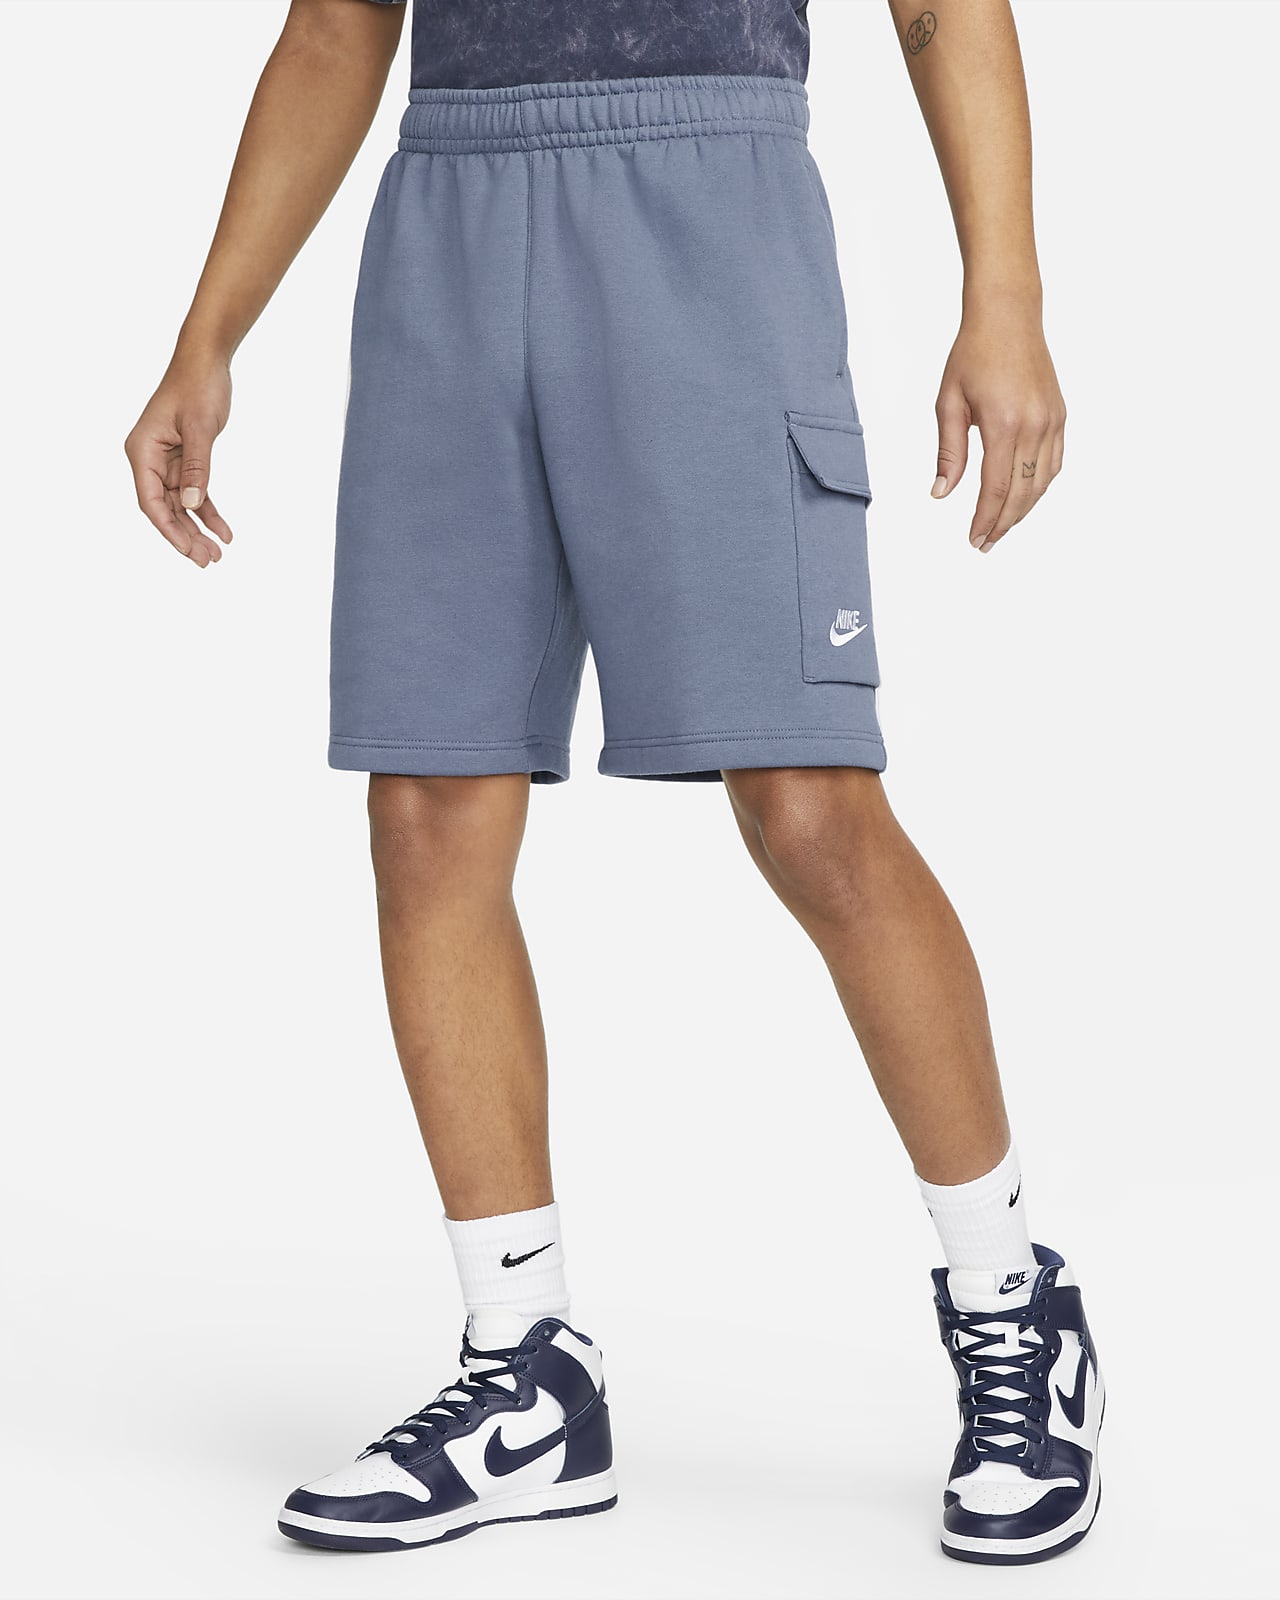 Nike Sportswear Men's Cargo Shorts. UK